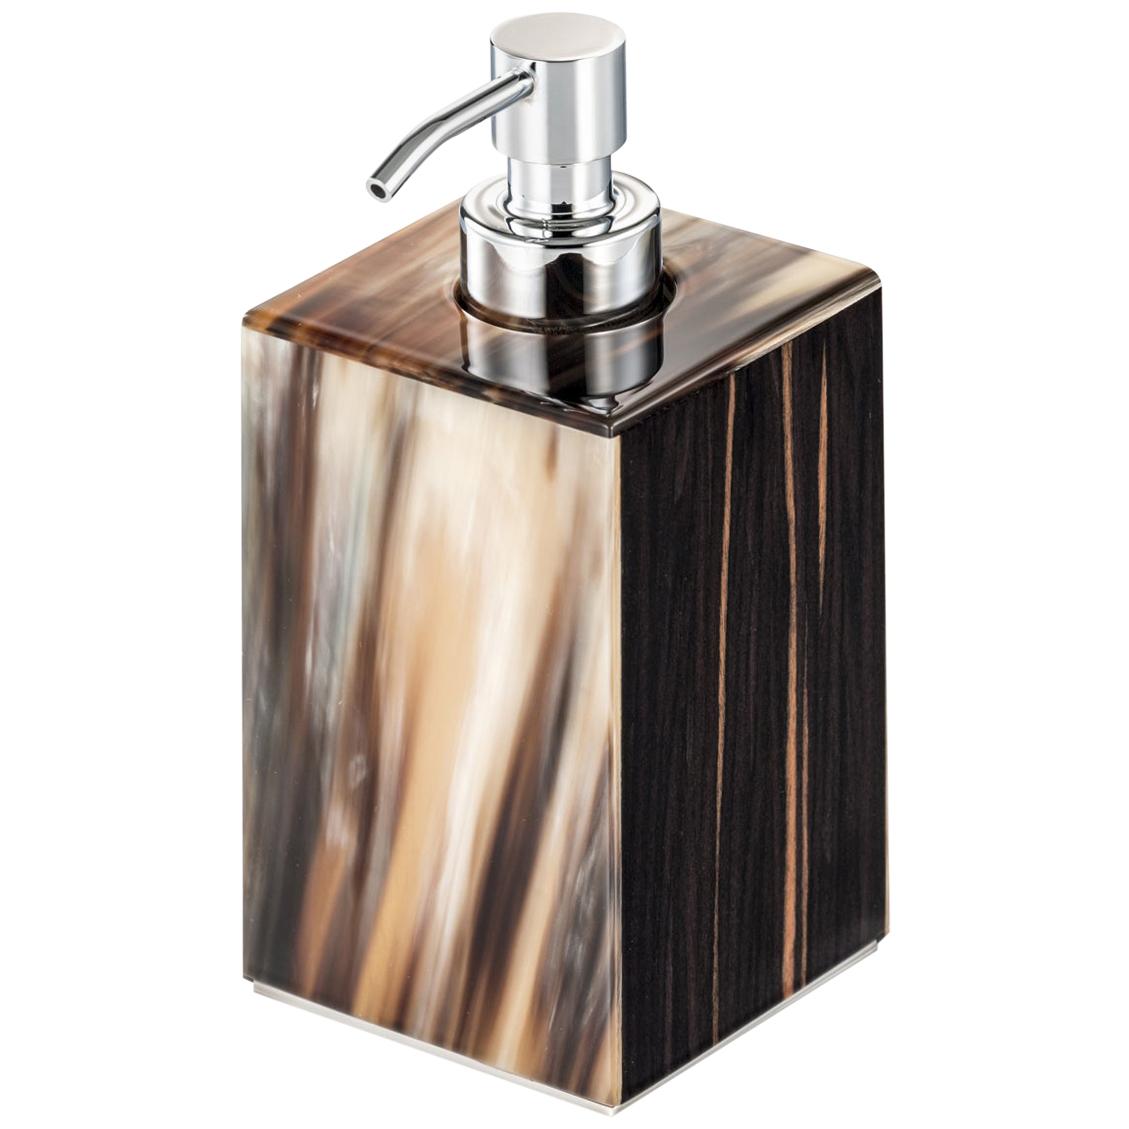 Iris Soap Dispenser in Glossy Ebony with Corno Italiano Inlays Mod. 4771